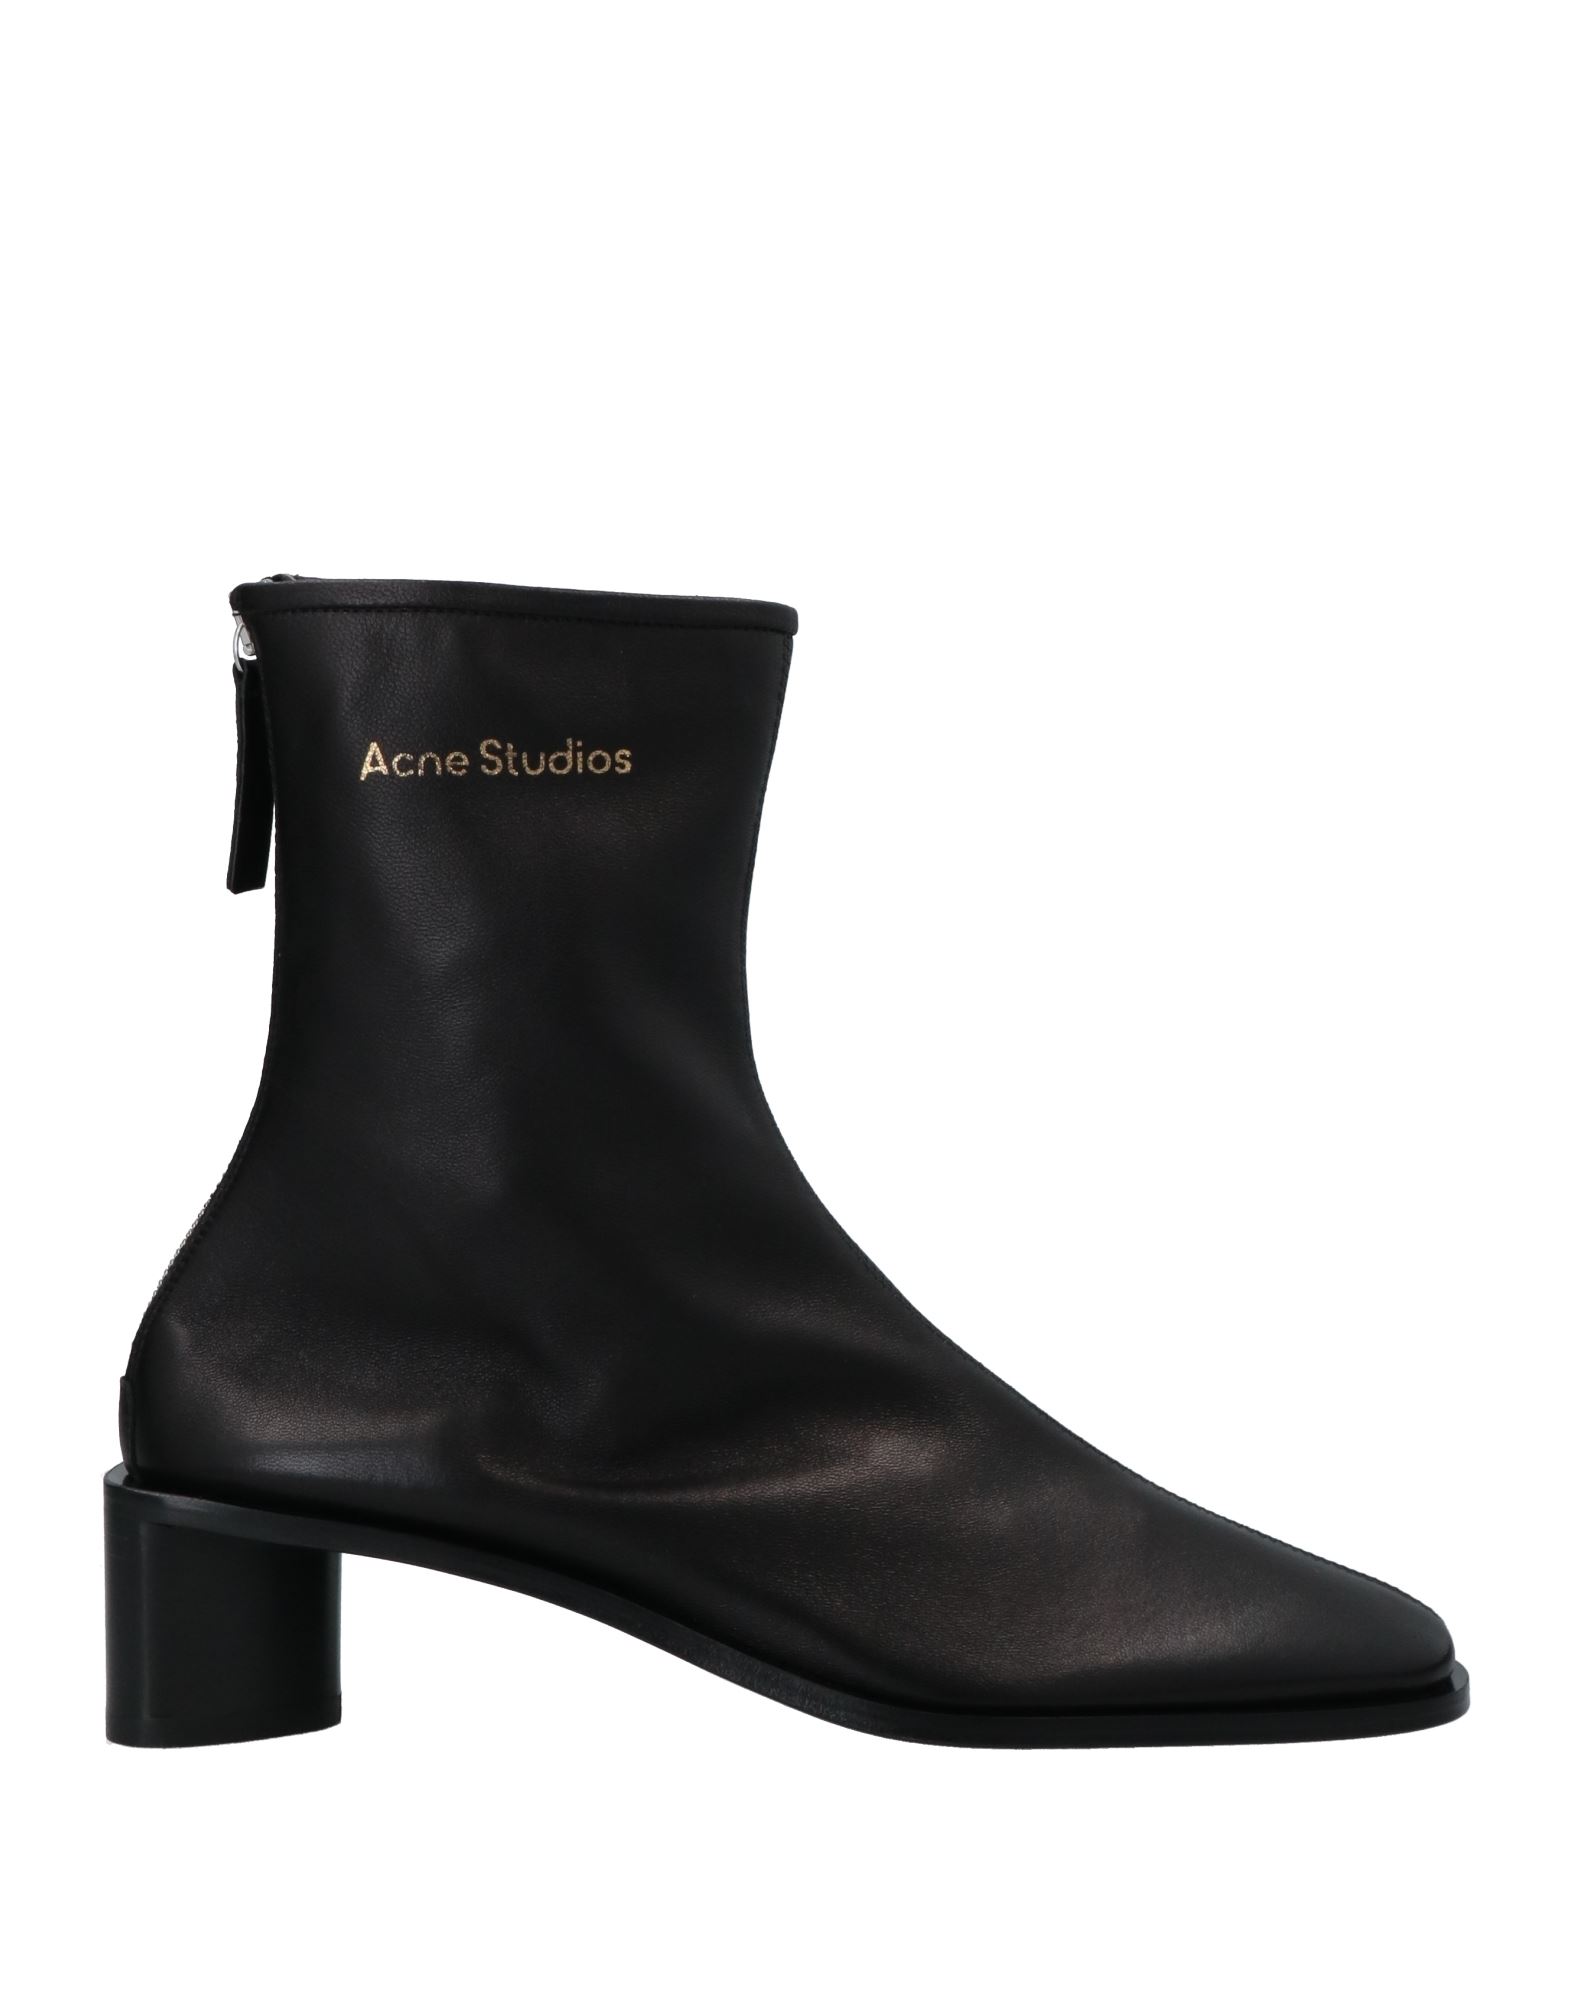 Shop Acne Studios Woman Ankle Boots Black Size 8 Soft Leather